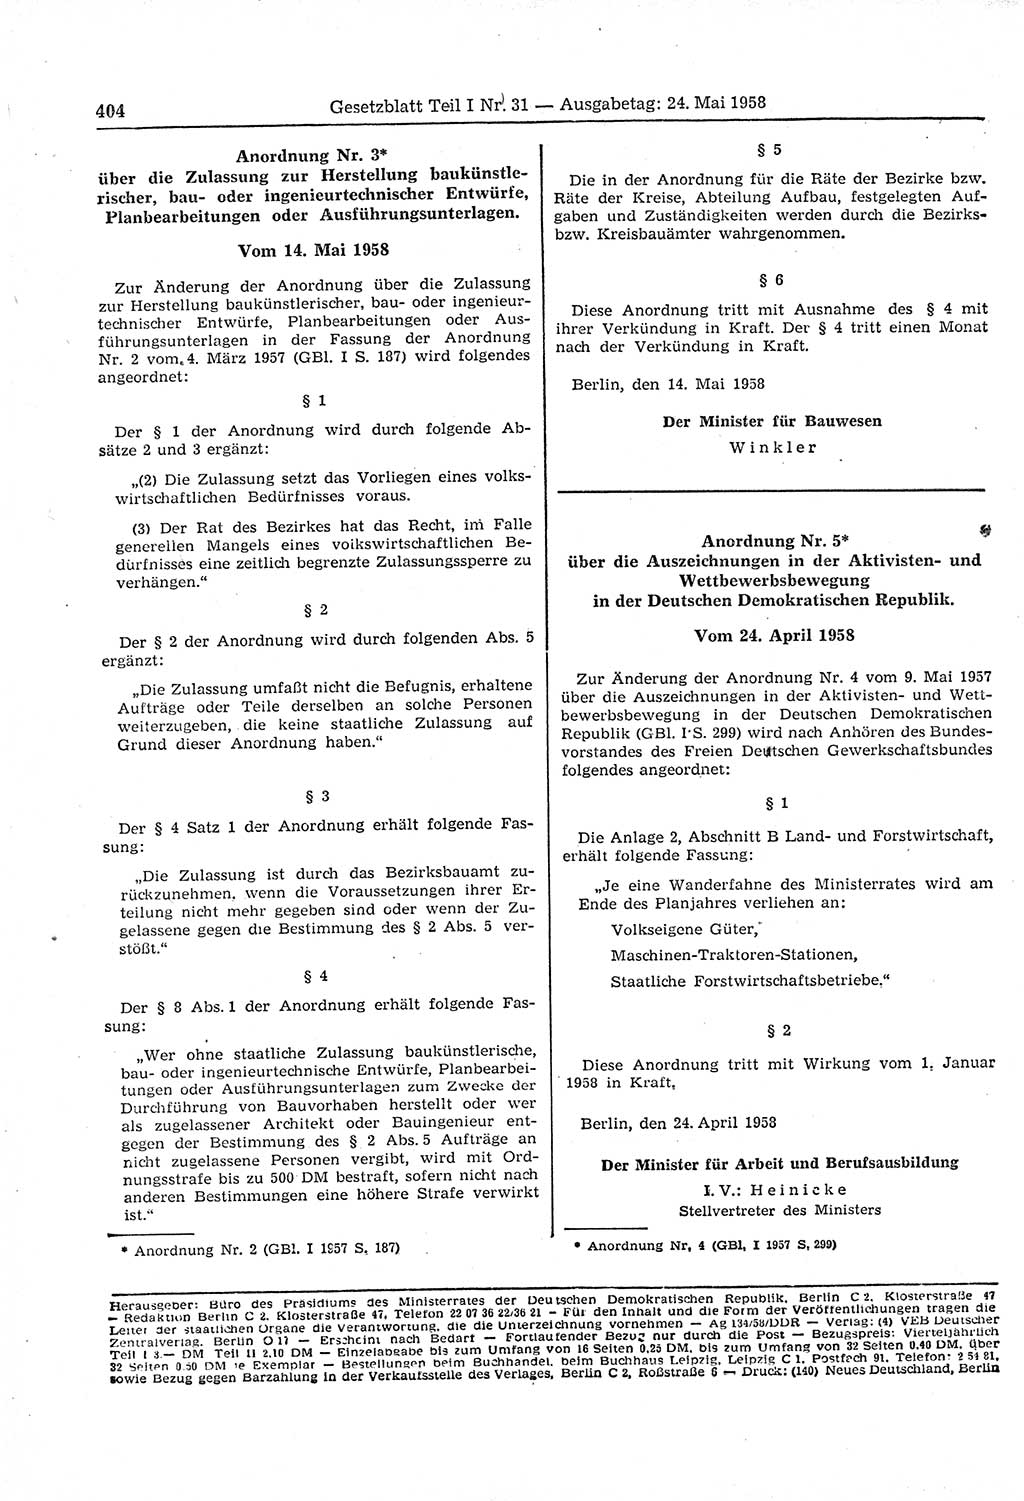 Gesetzblatt (GBl.) der Deutschen Demokratischen Republik (DDR) Teil Ⅰ 1958, Seite 404 (GBl. DDR Ⅰ 1958, S. 404)